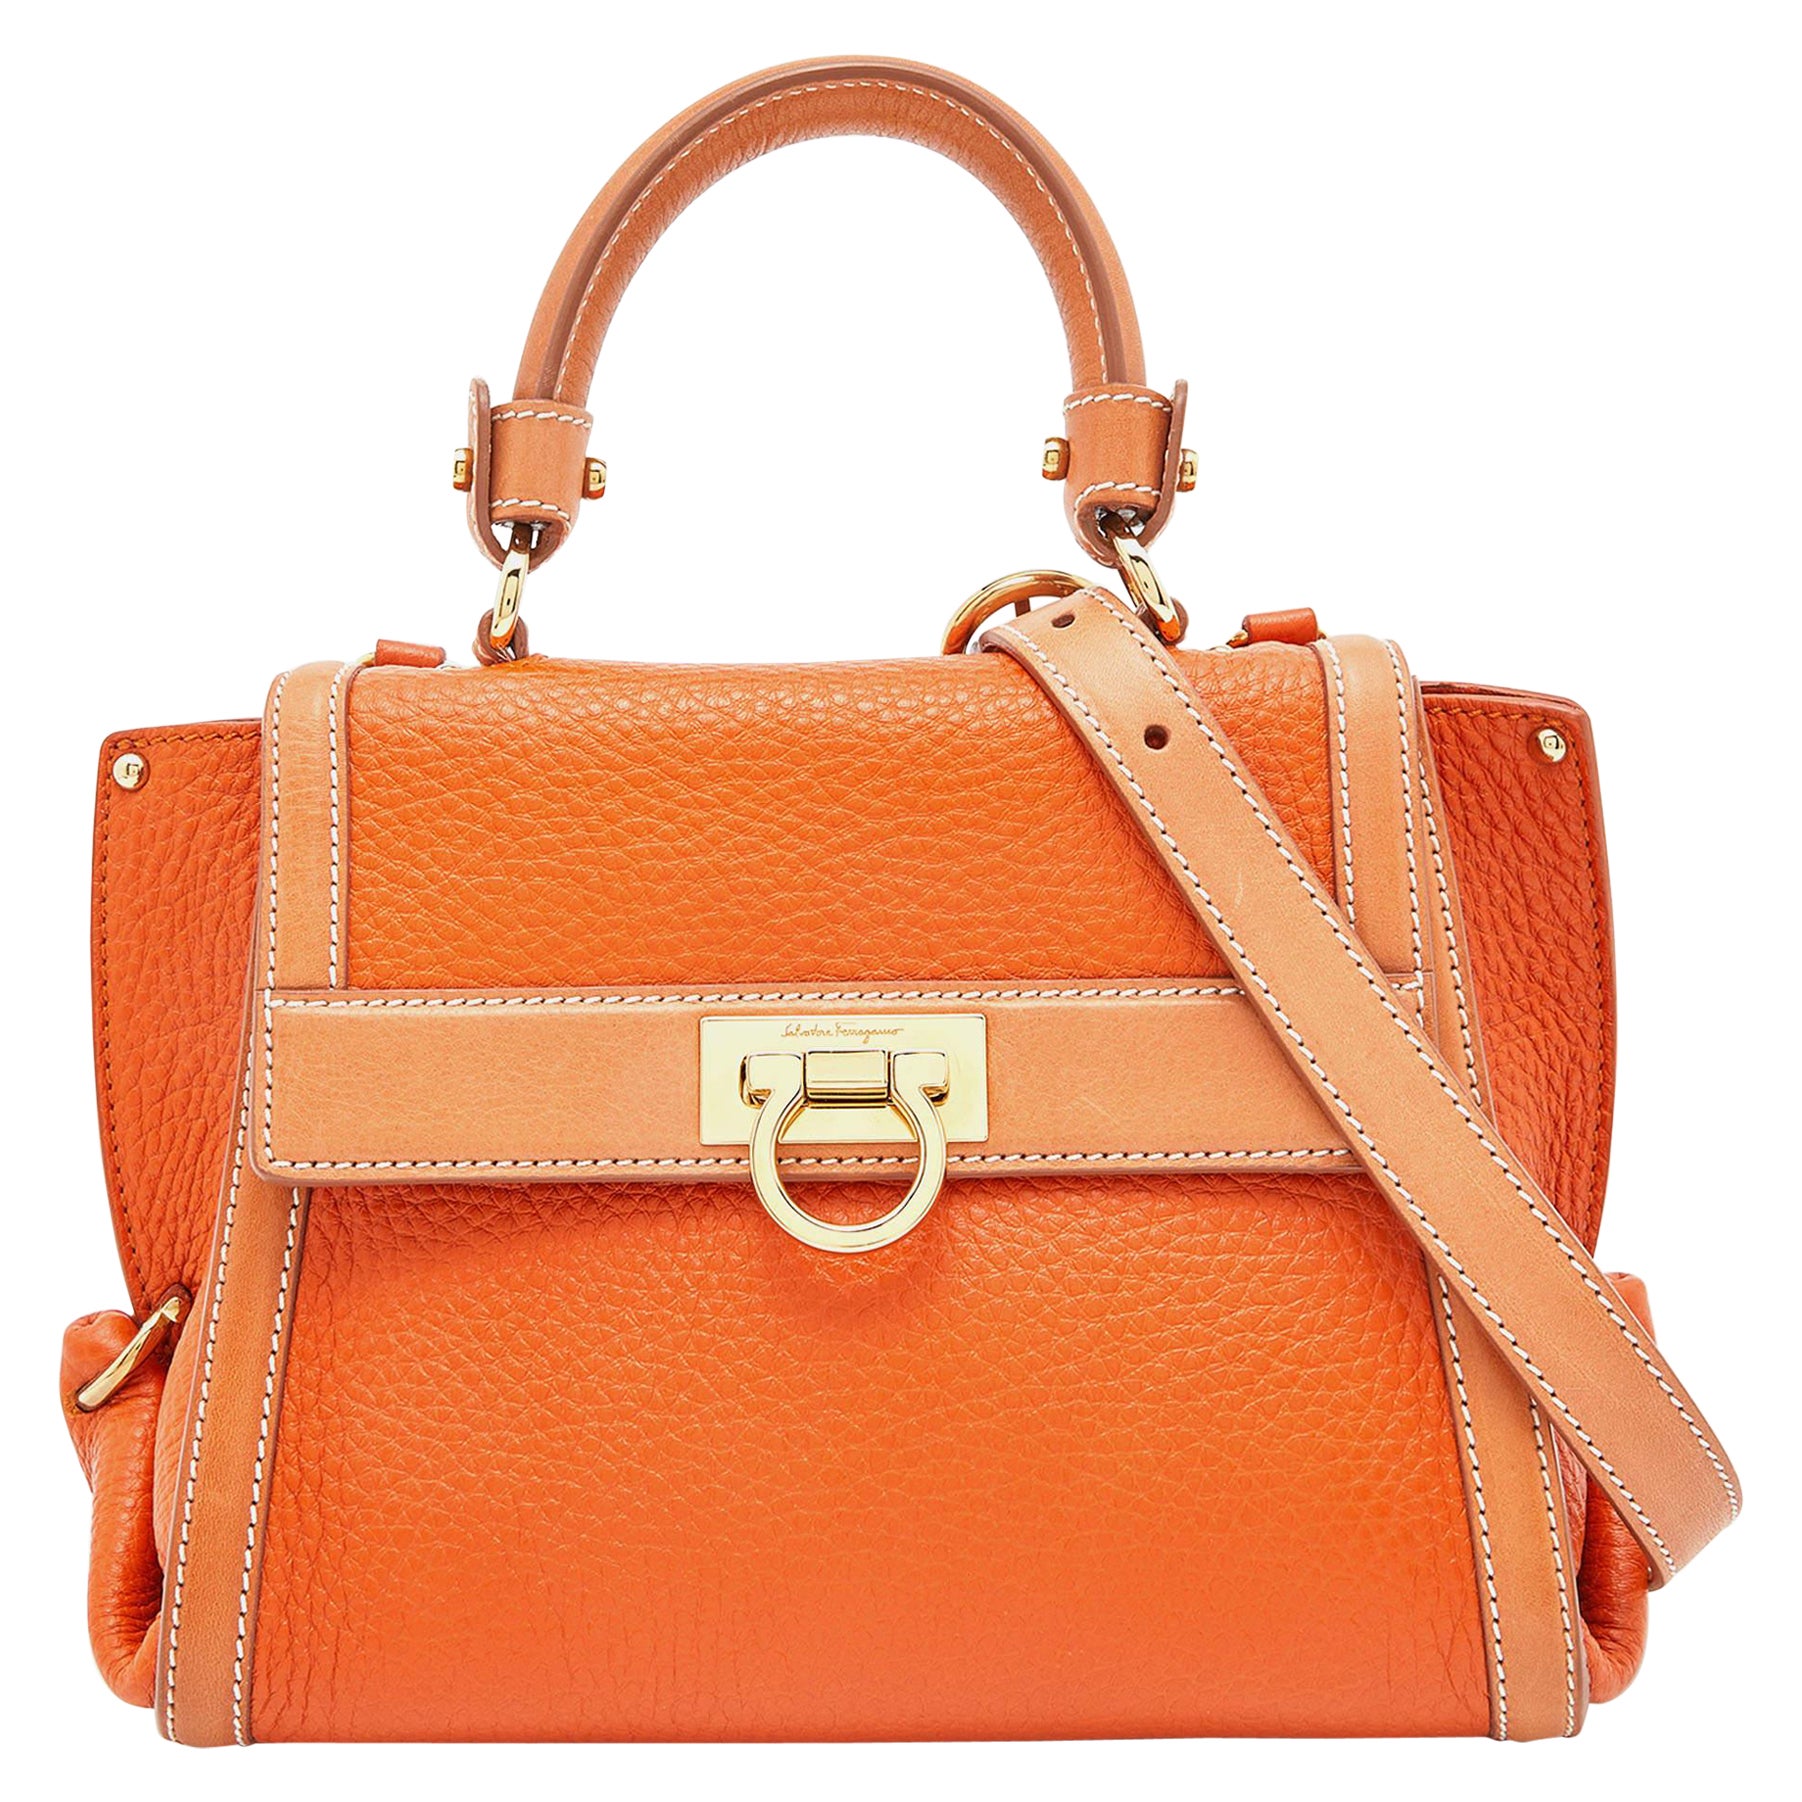 Salvatore Ferragamo Two Tone Orange Leather Small Sofia Top Handle Bag